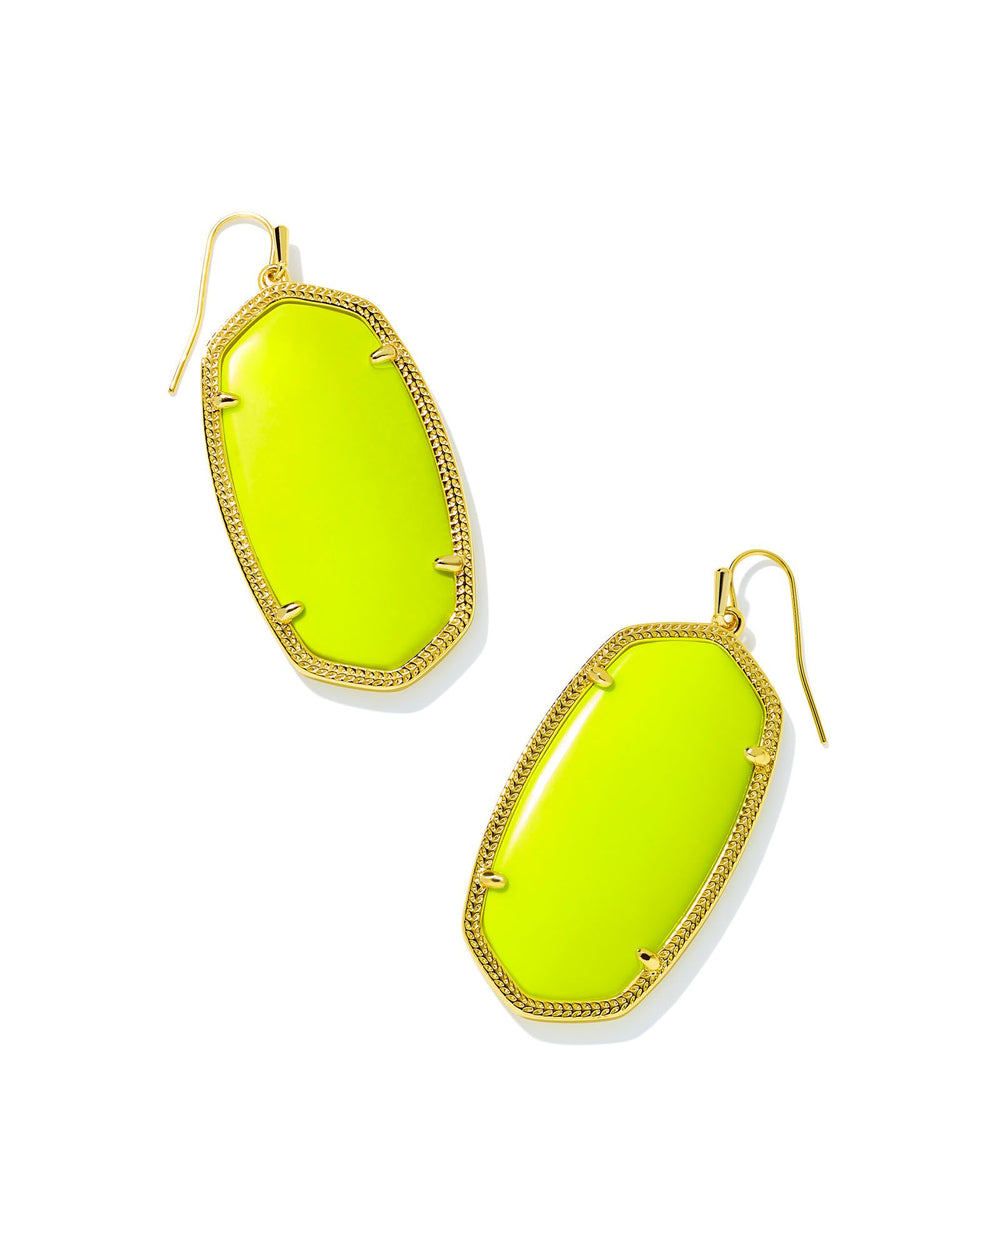 Danielle Gold Statement Earrings in Neon Yellow